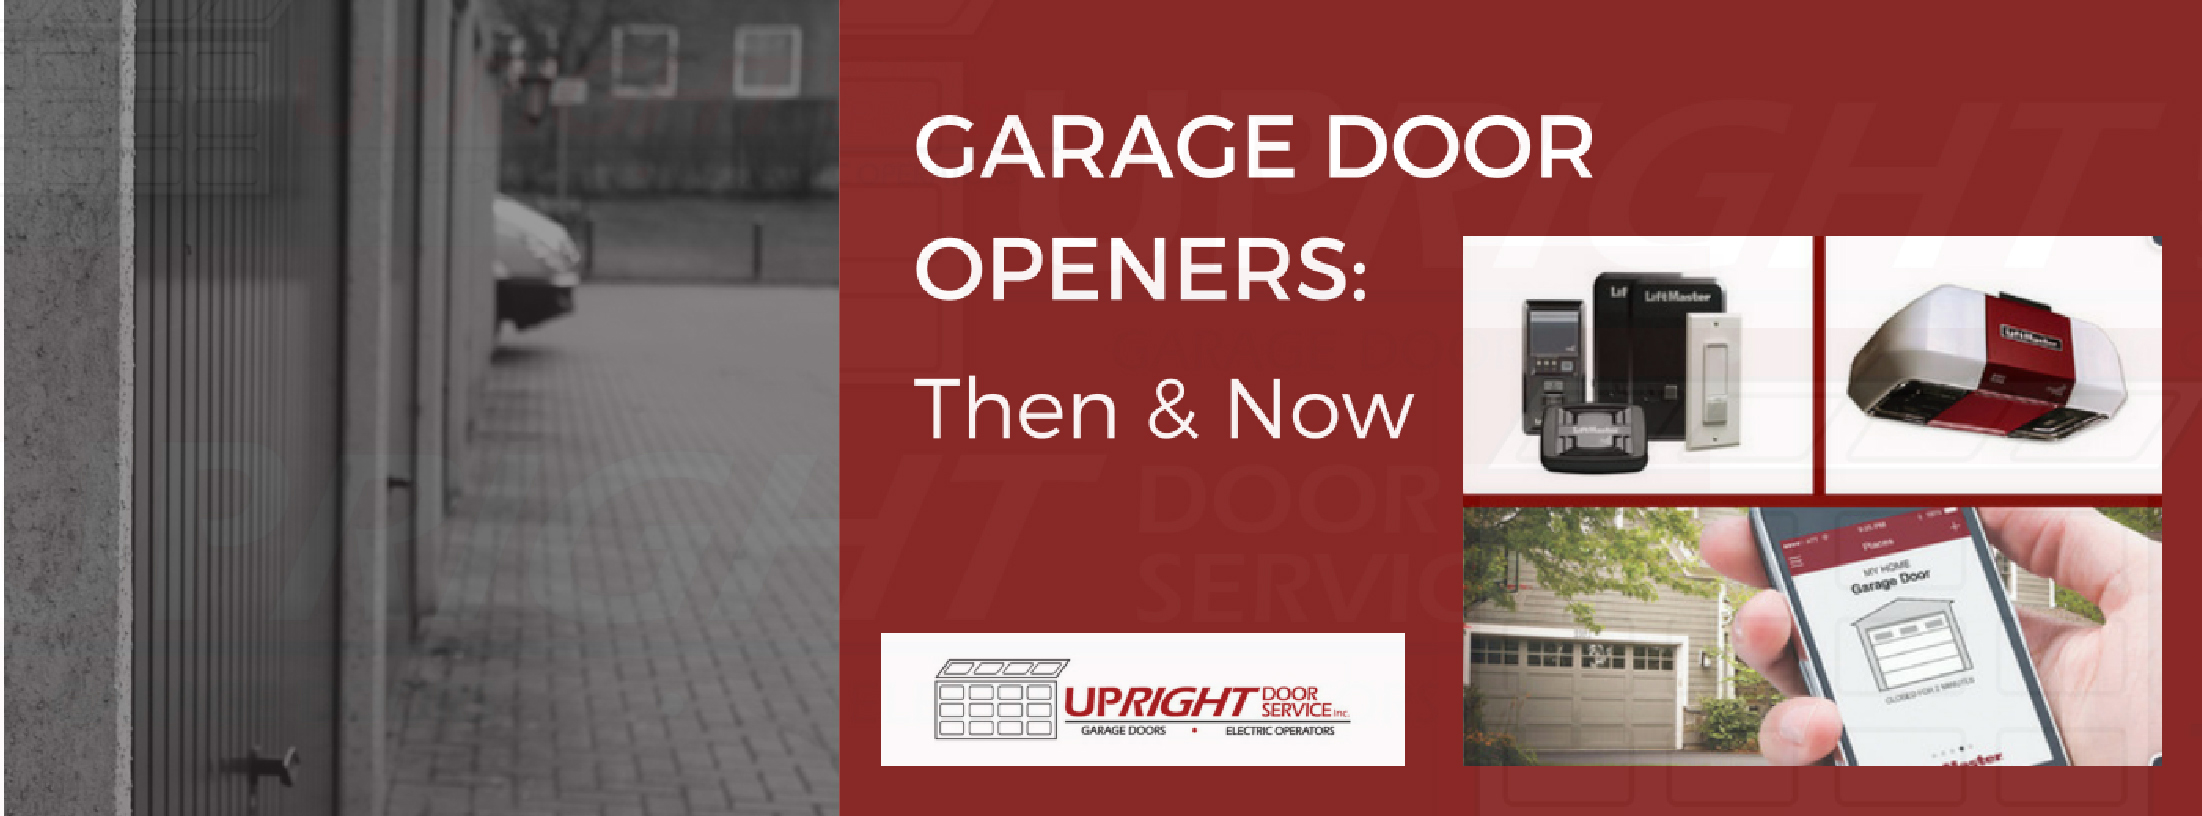 History of Garage Door Opener